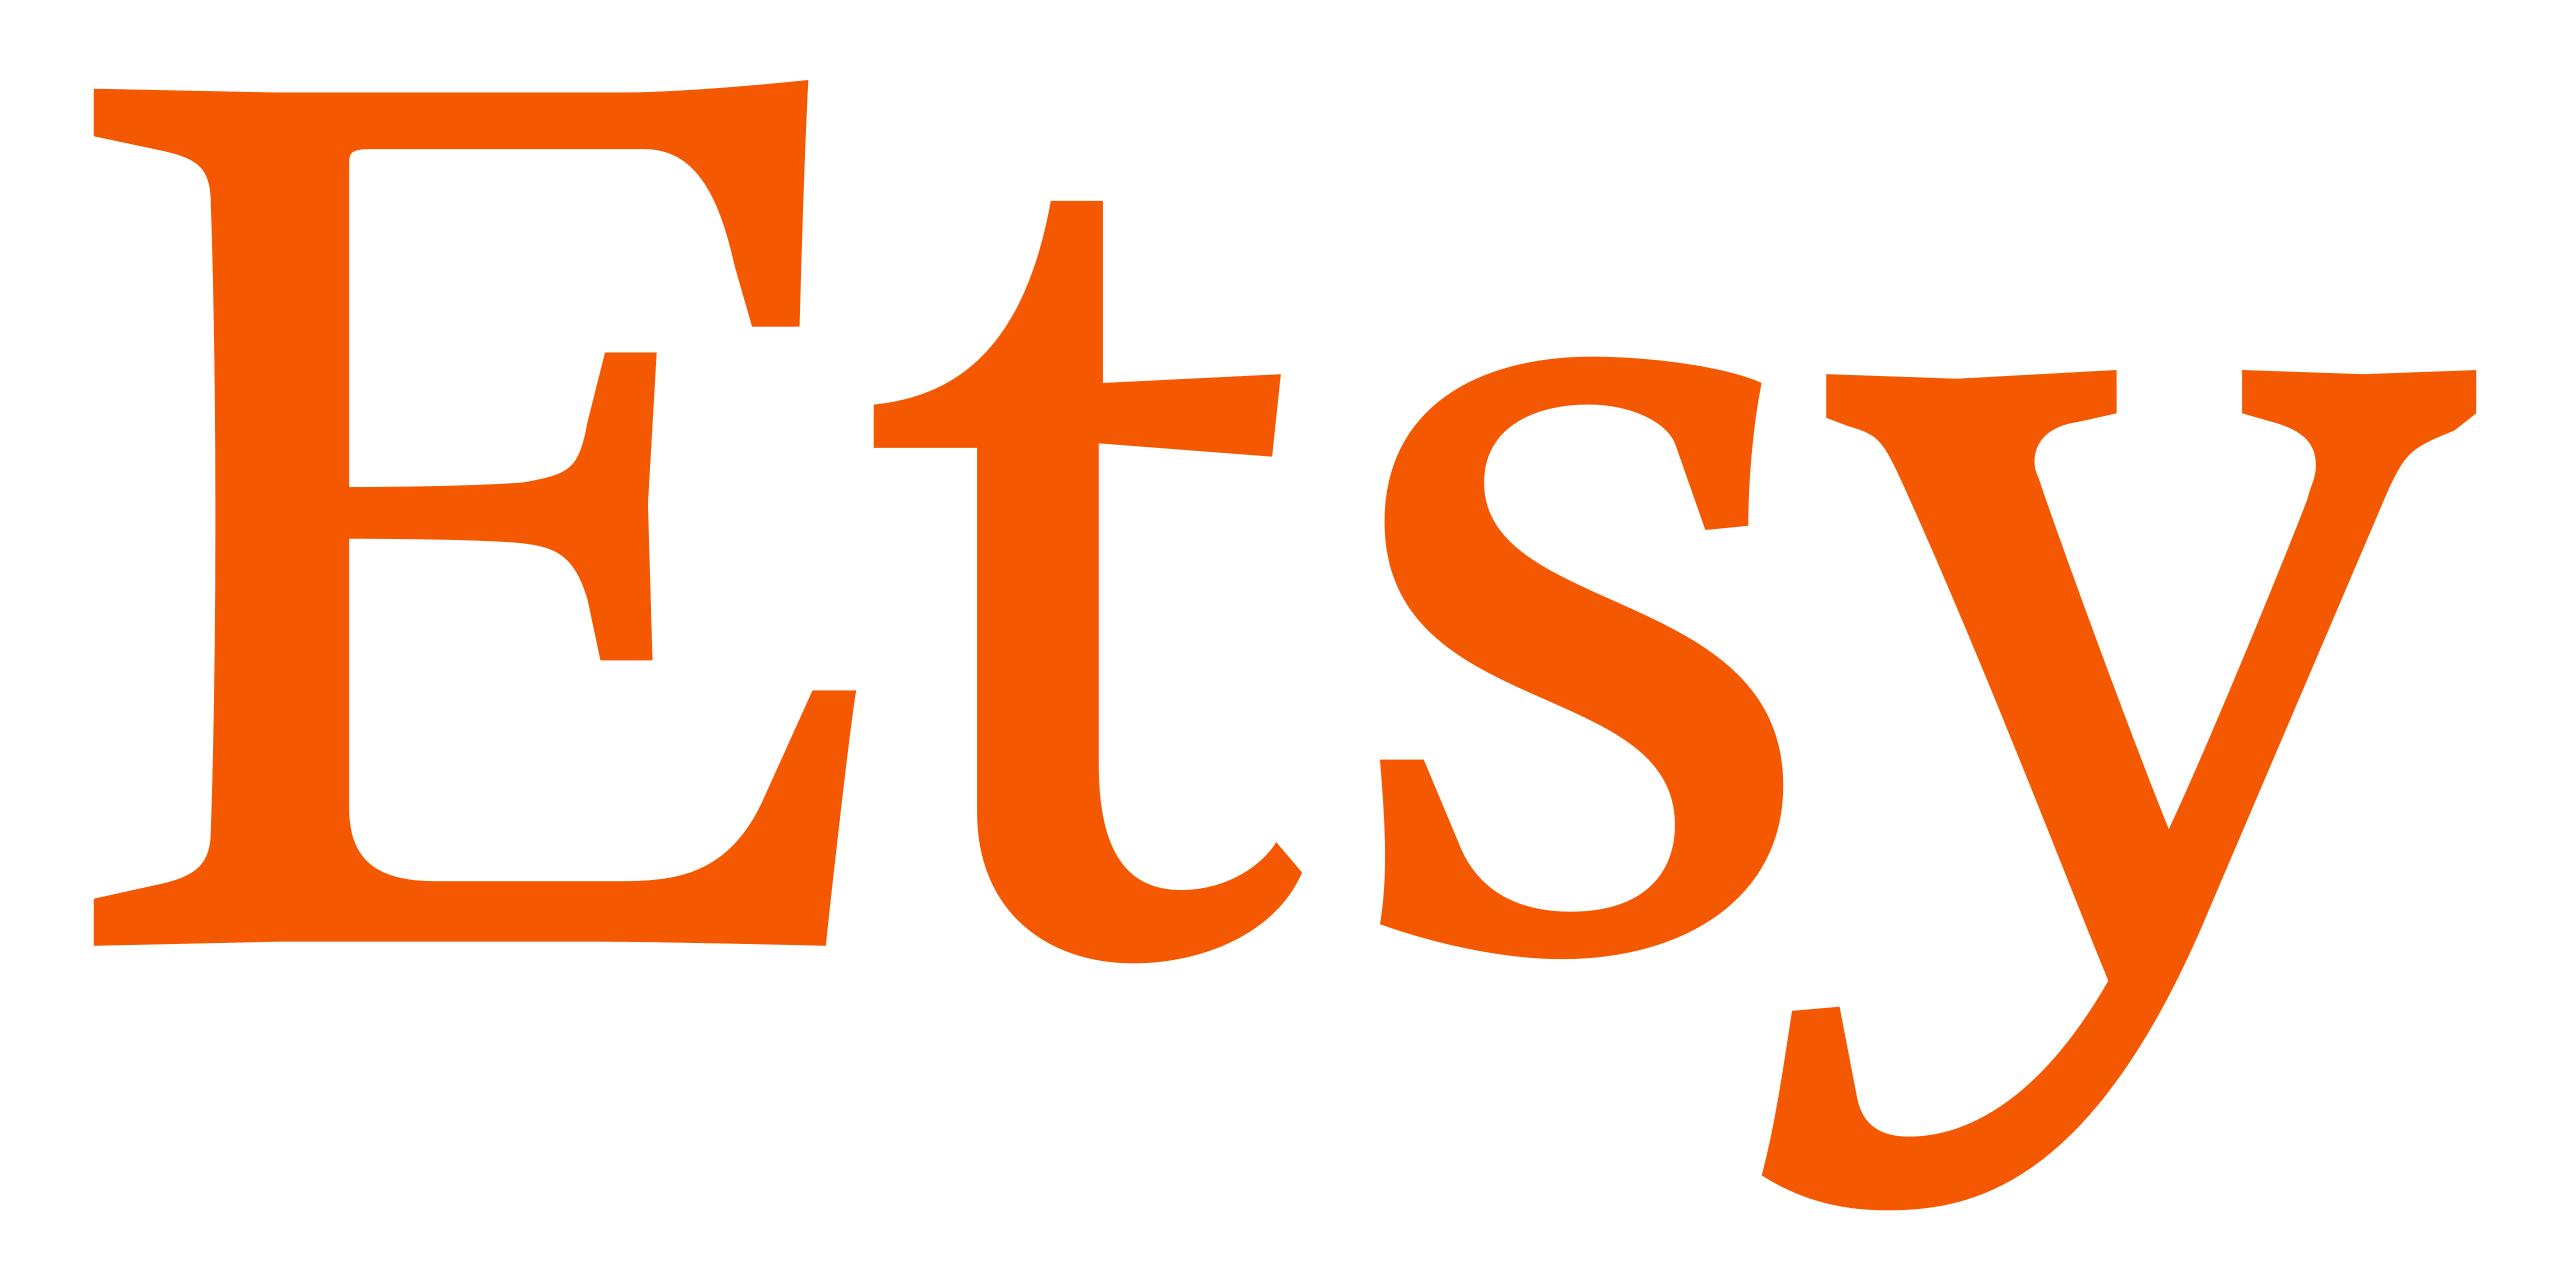 Archivo:Etsy logo.svg - Wikipedia, la enciclopedia libre